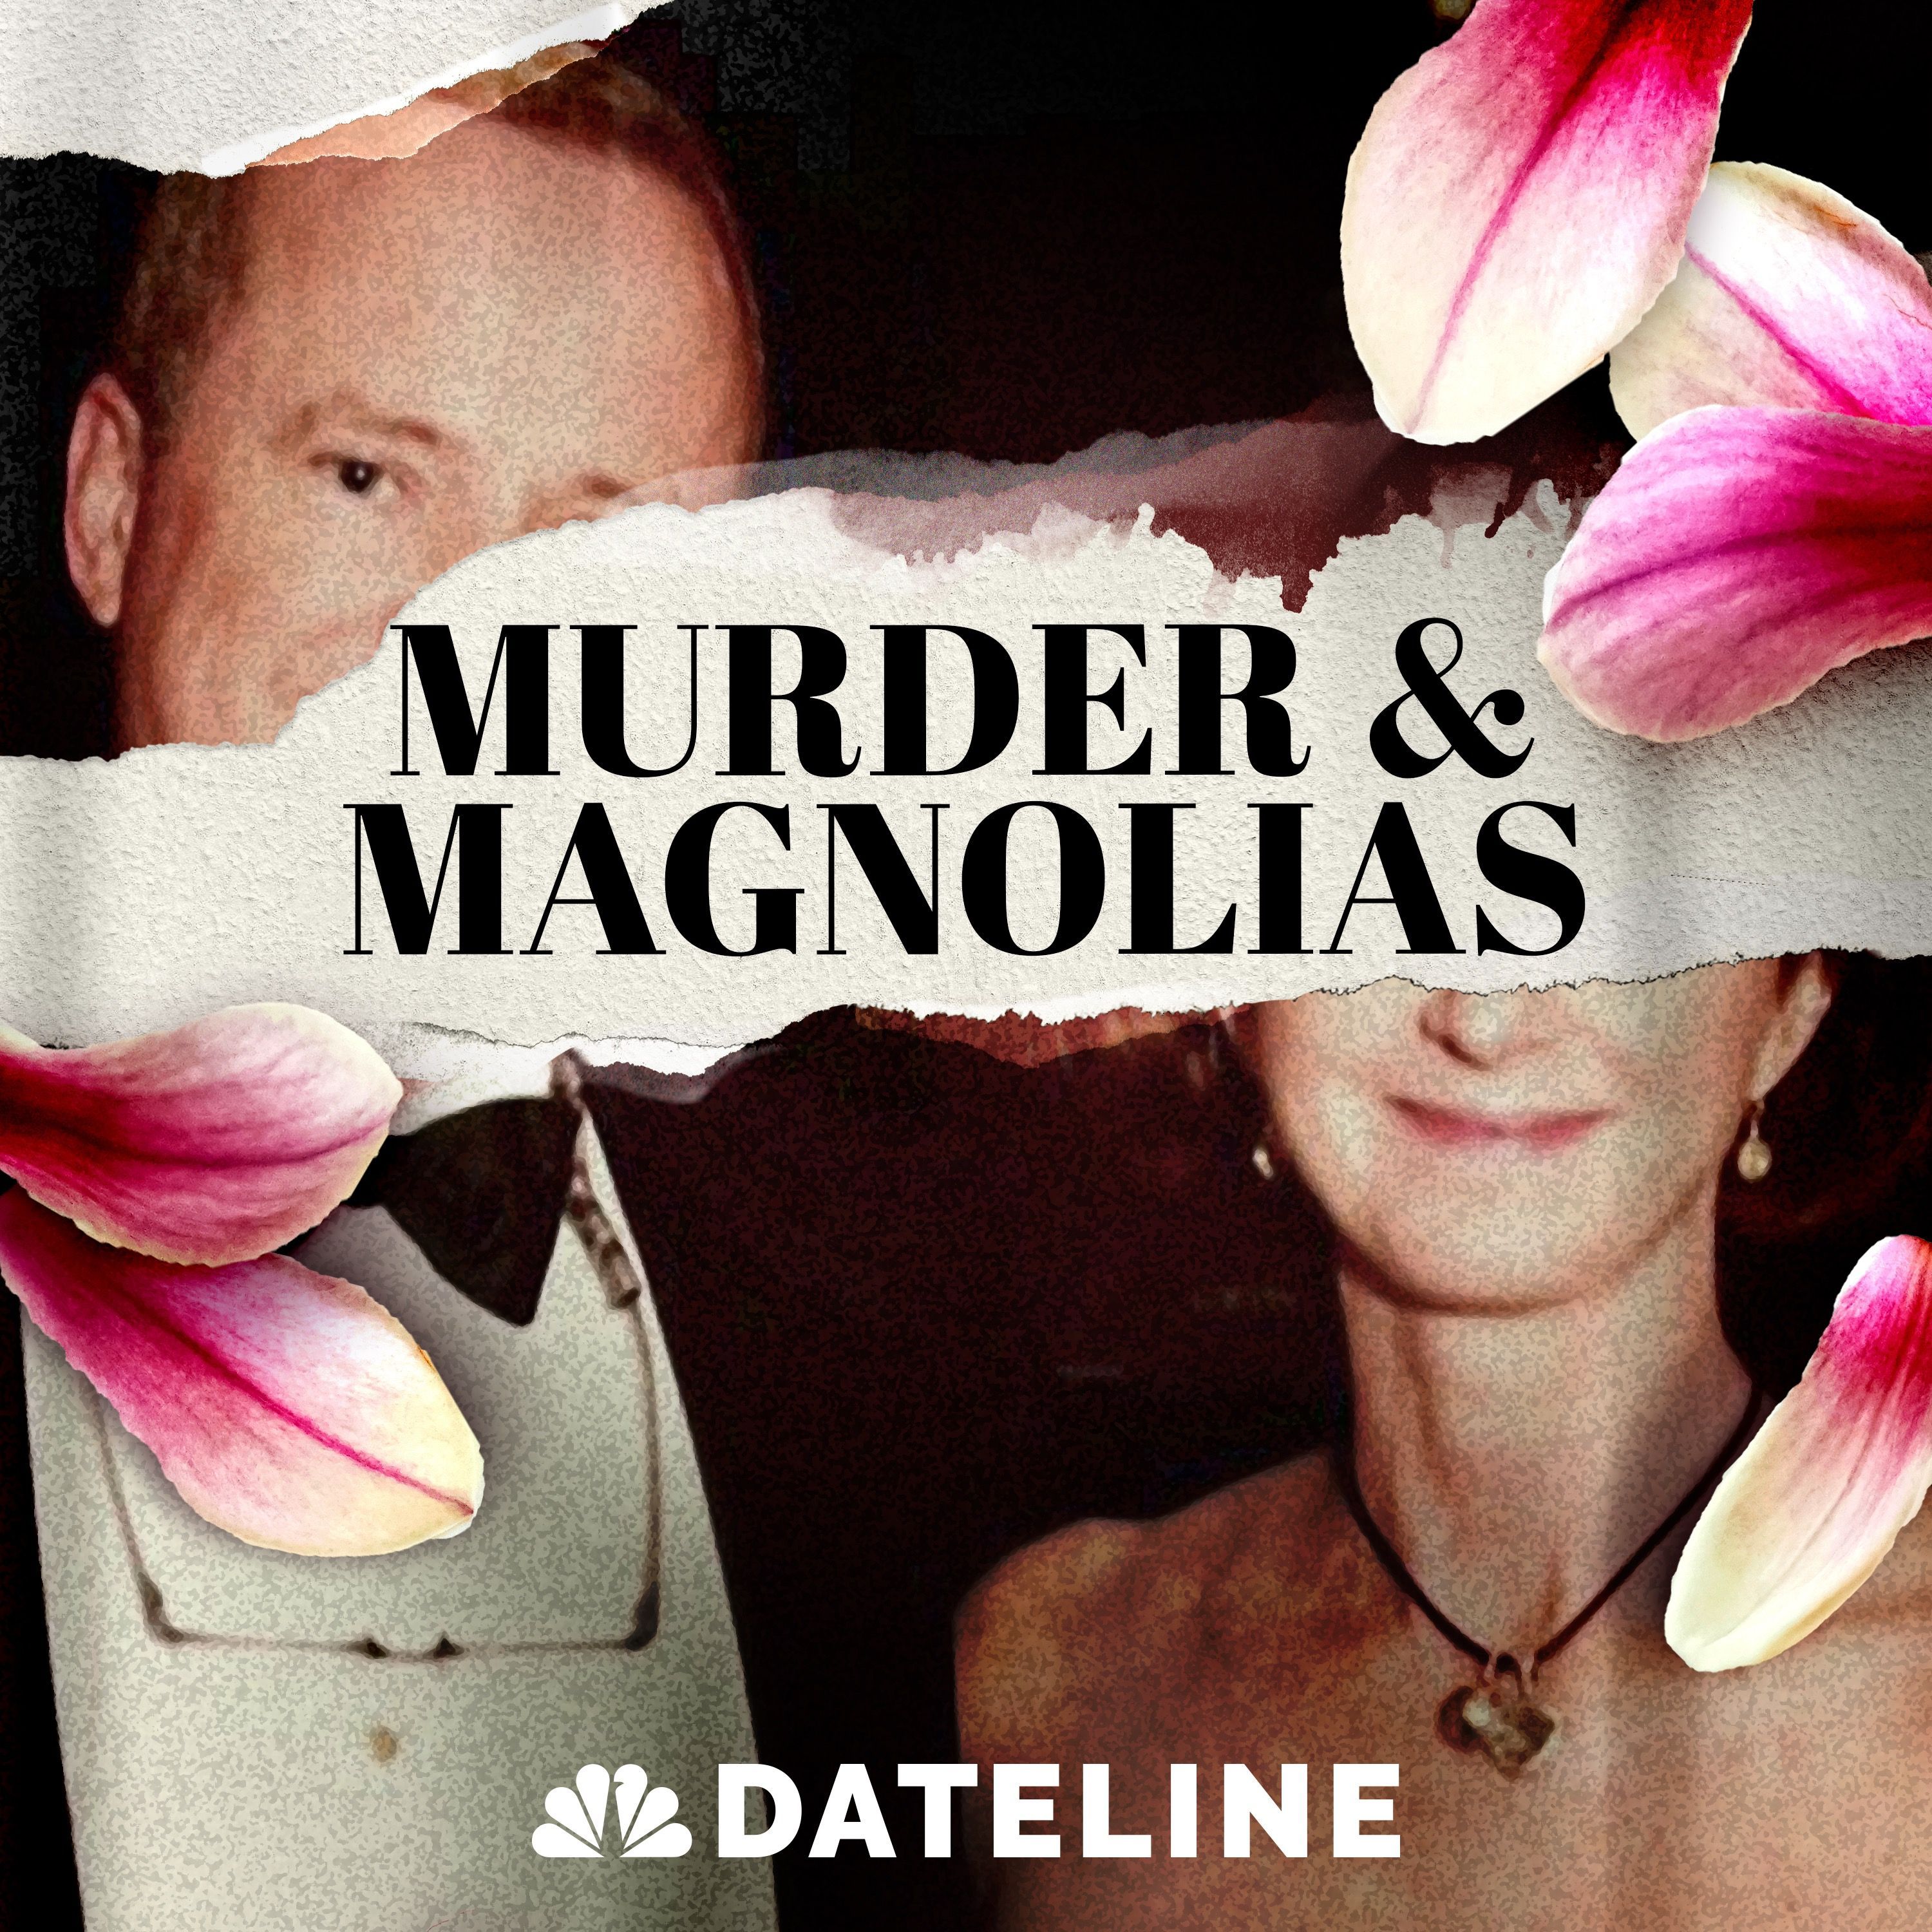 Introducing: Murder & Magnolias